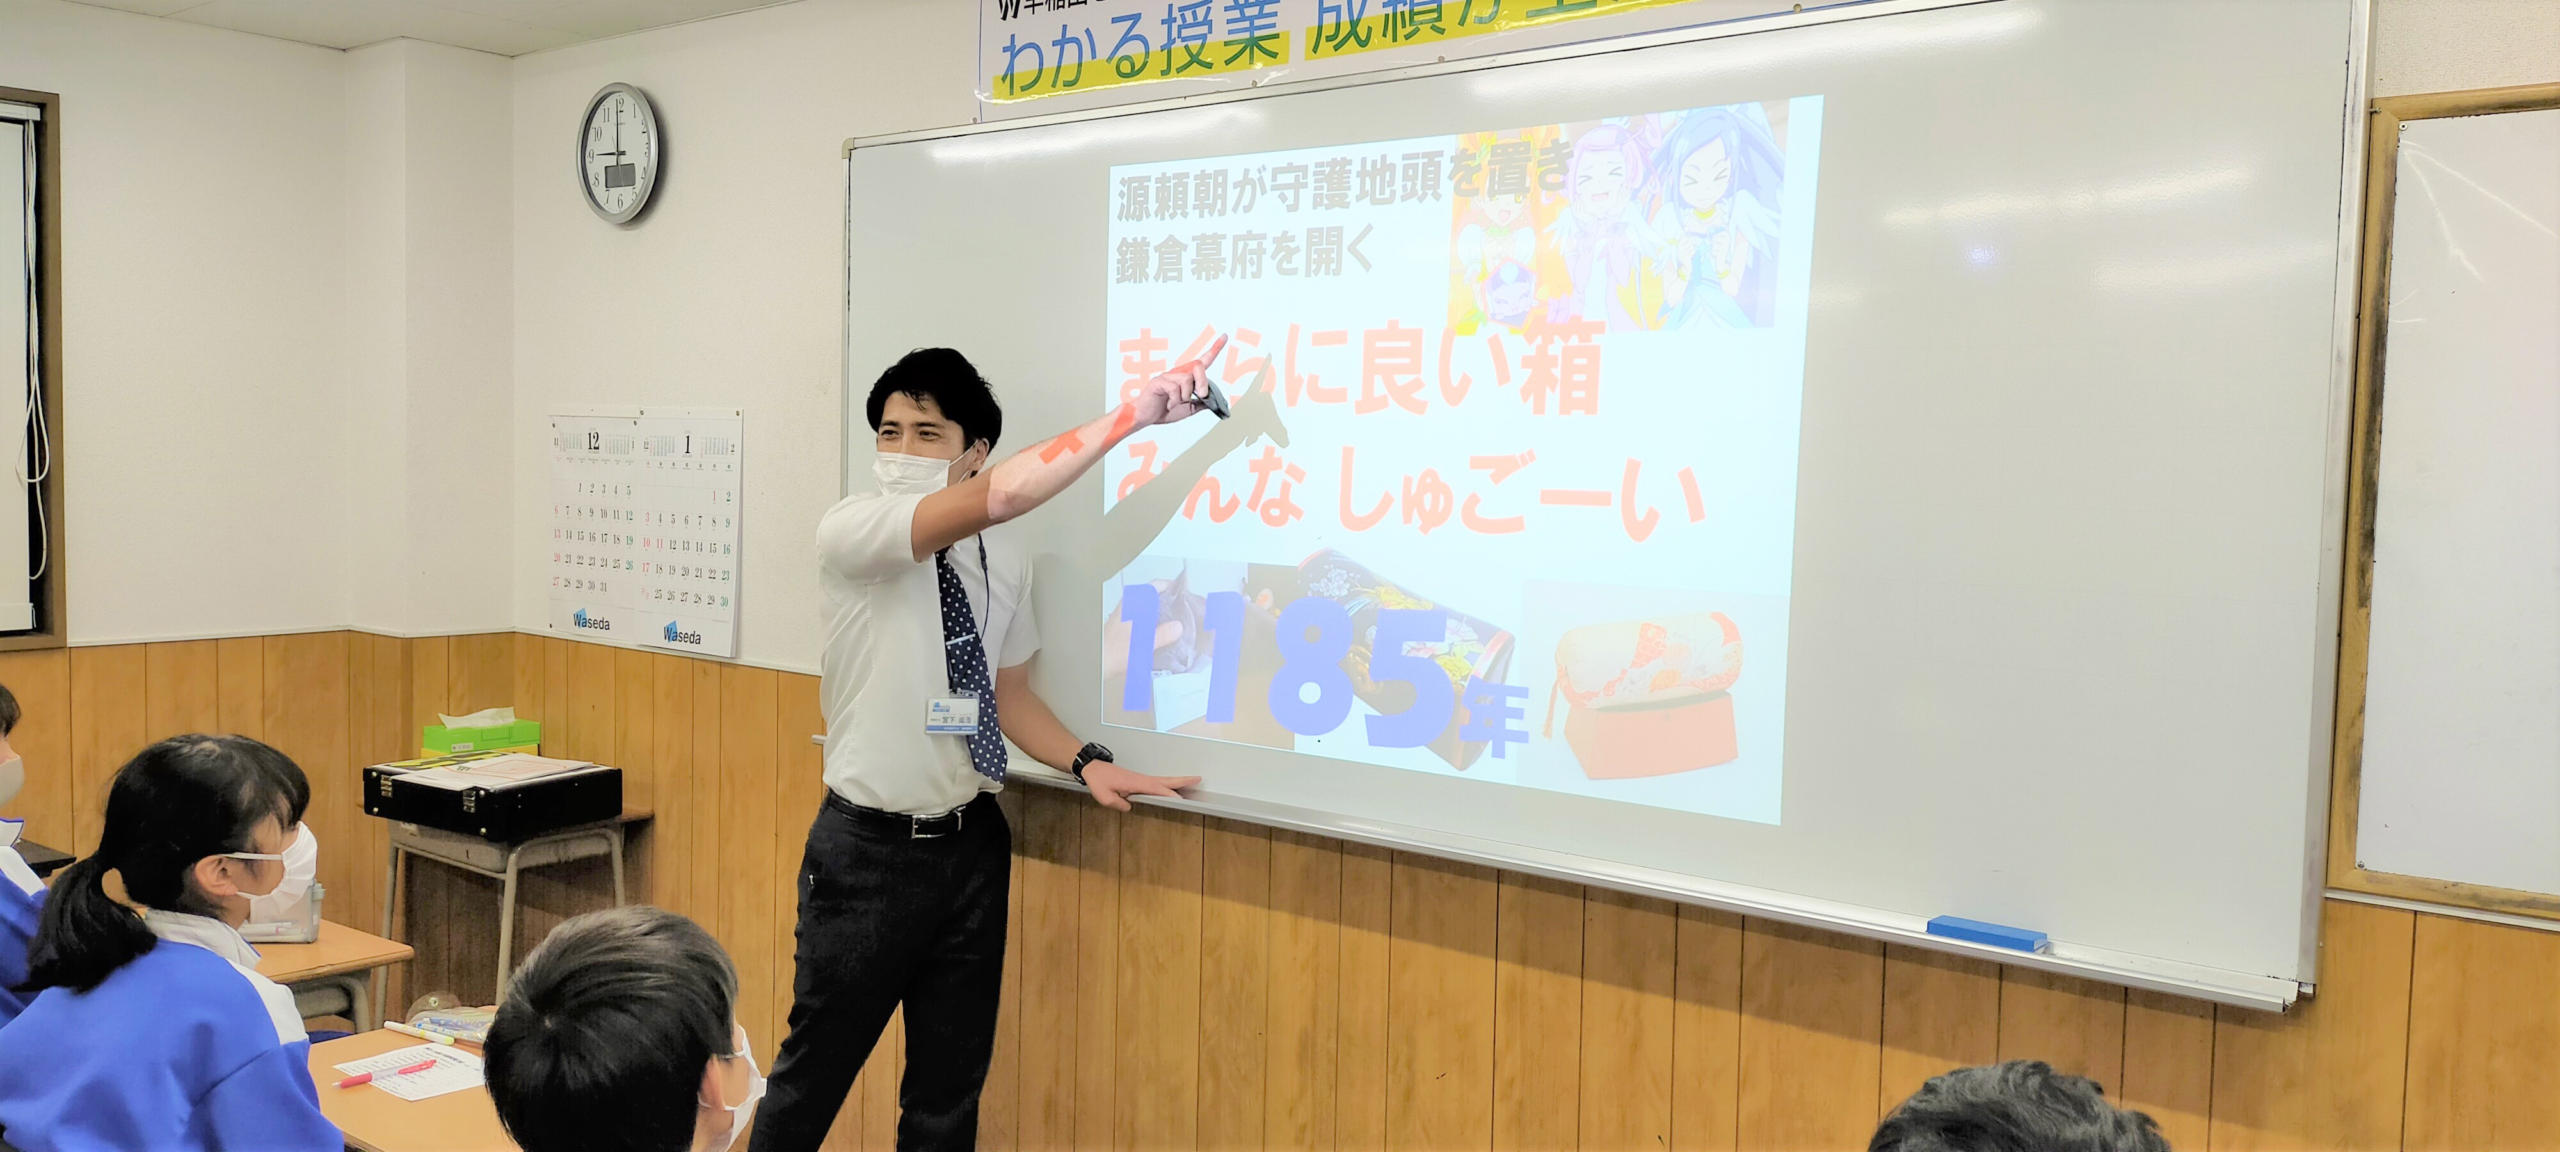 高崎西校の「ロゴ合わせ」で学ぶ社会の授業風景